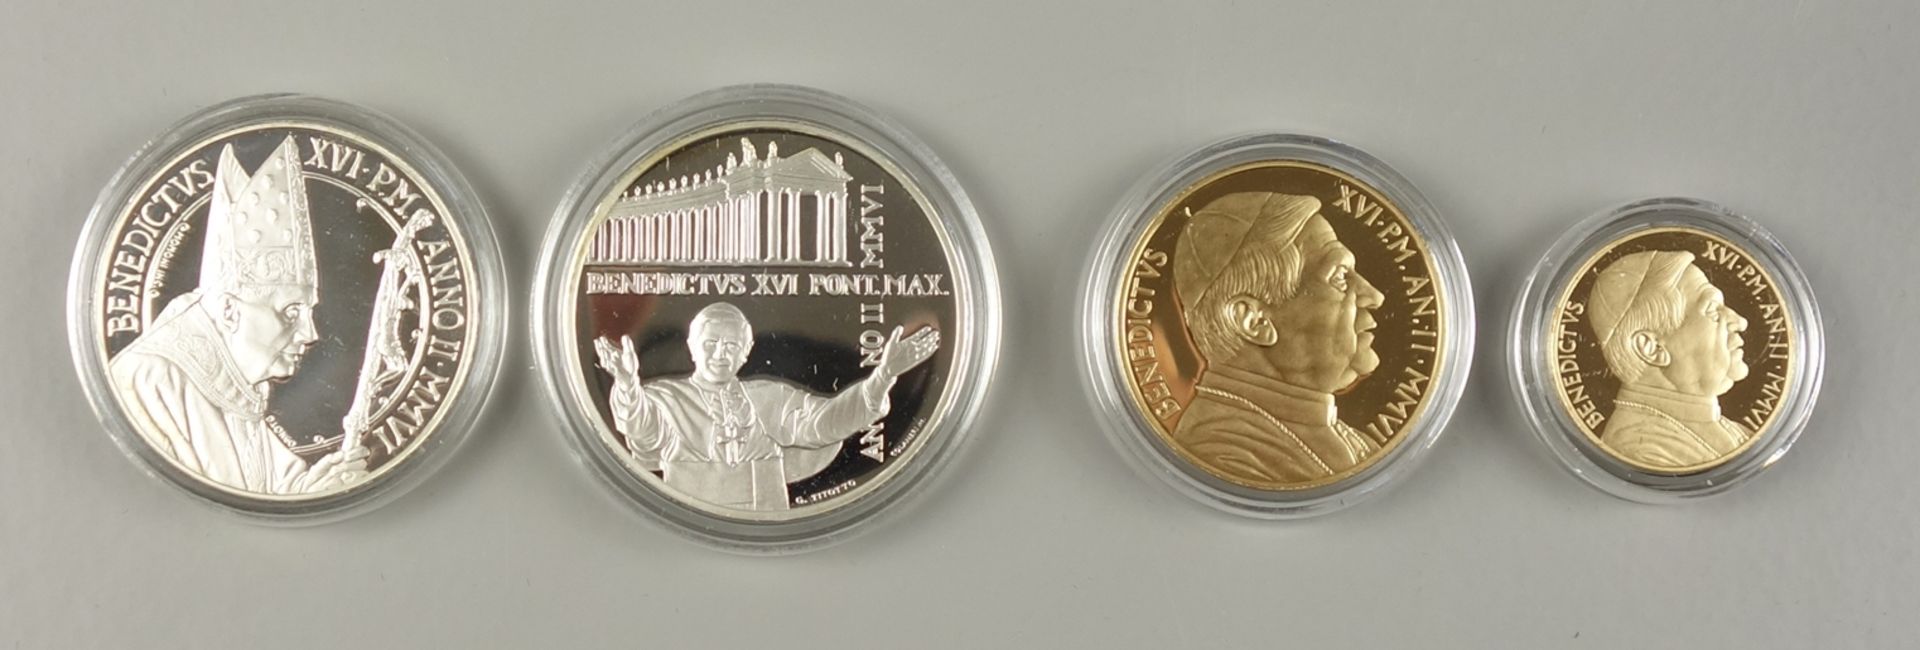 Münzsatz Vatikan 2006, Silber und Gold, alle in OVP / Kapsel, pp: 1ct bis 2 €,